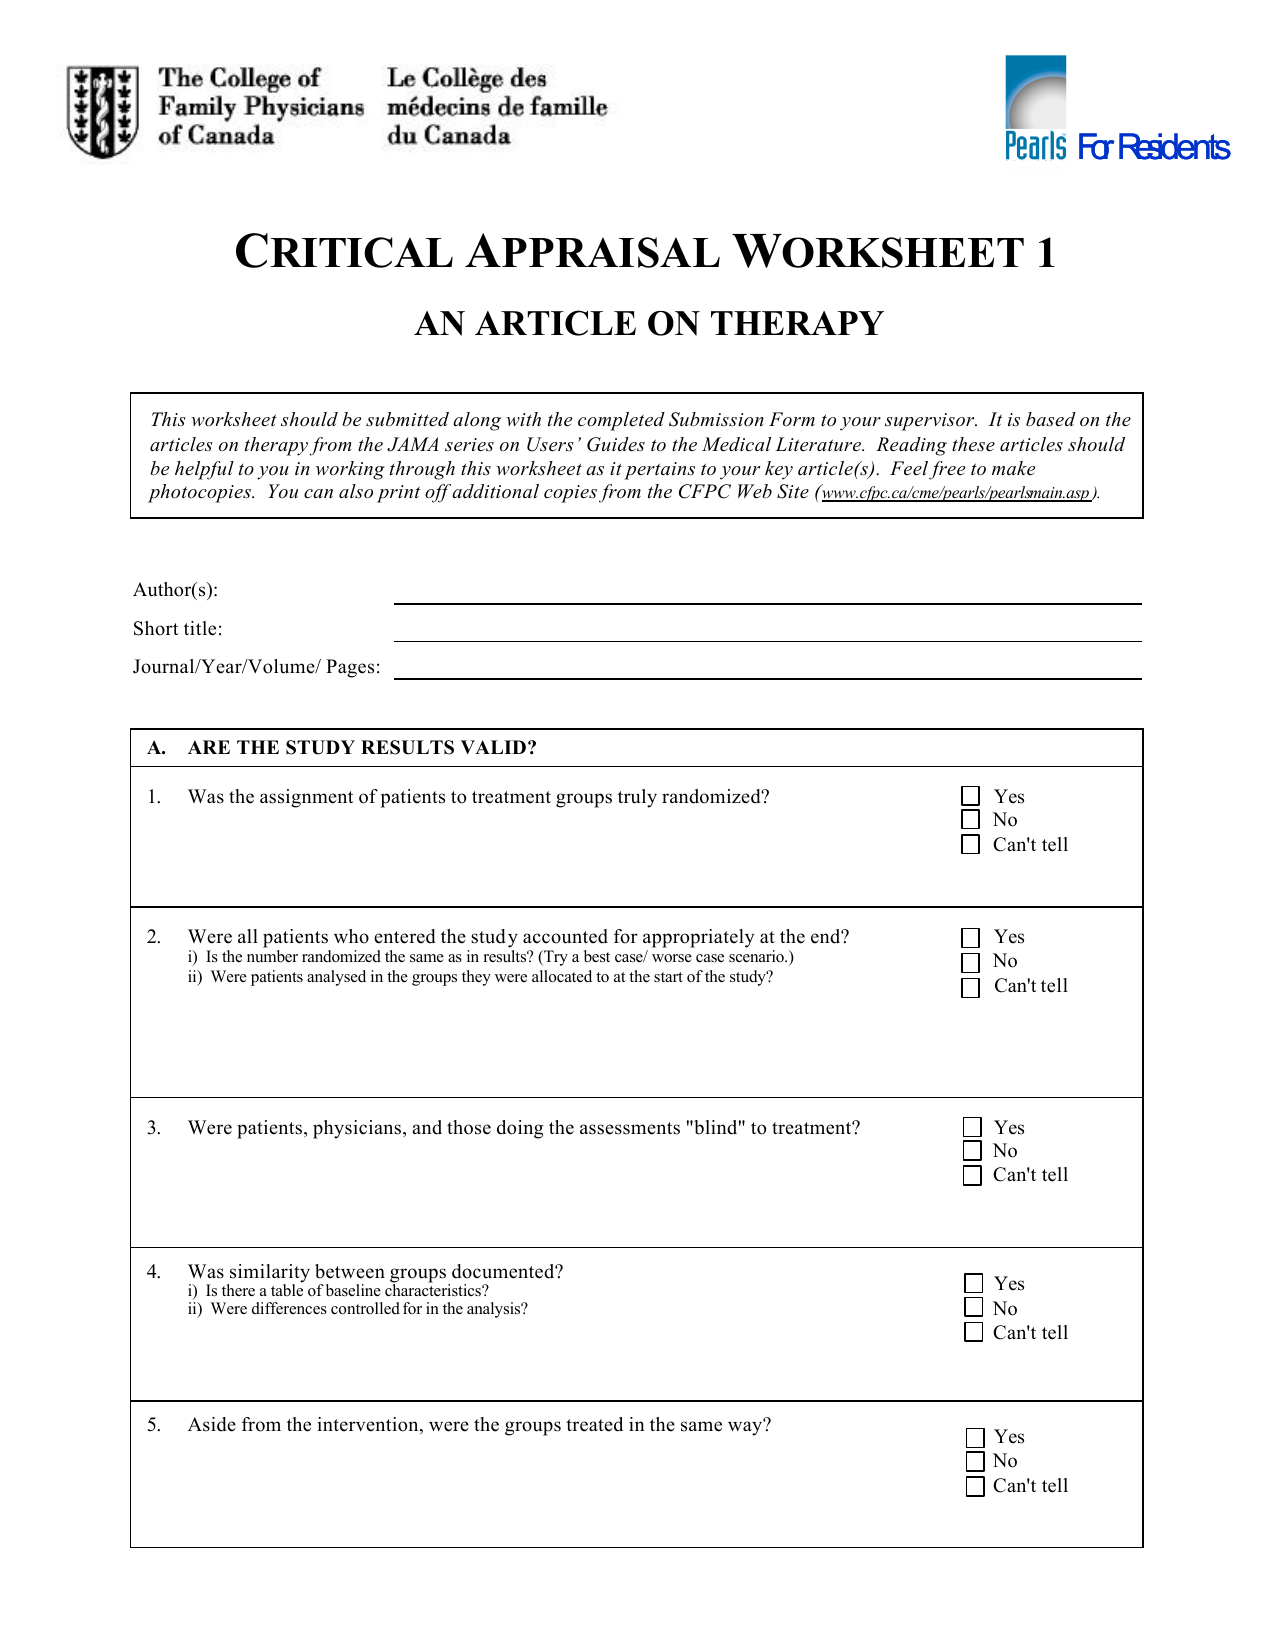 CRITICAL APPRAISAL WORKSHEET 1